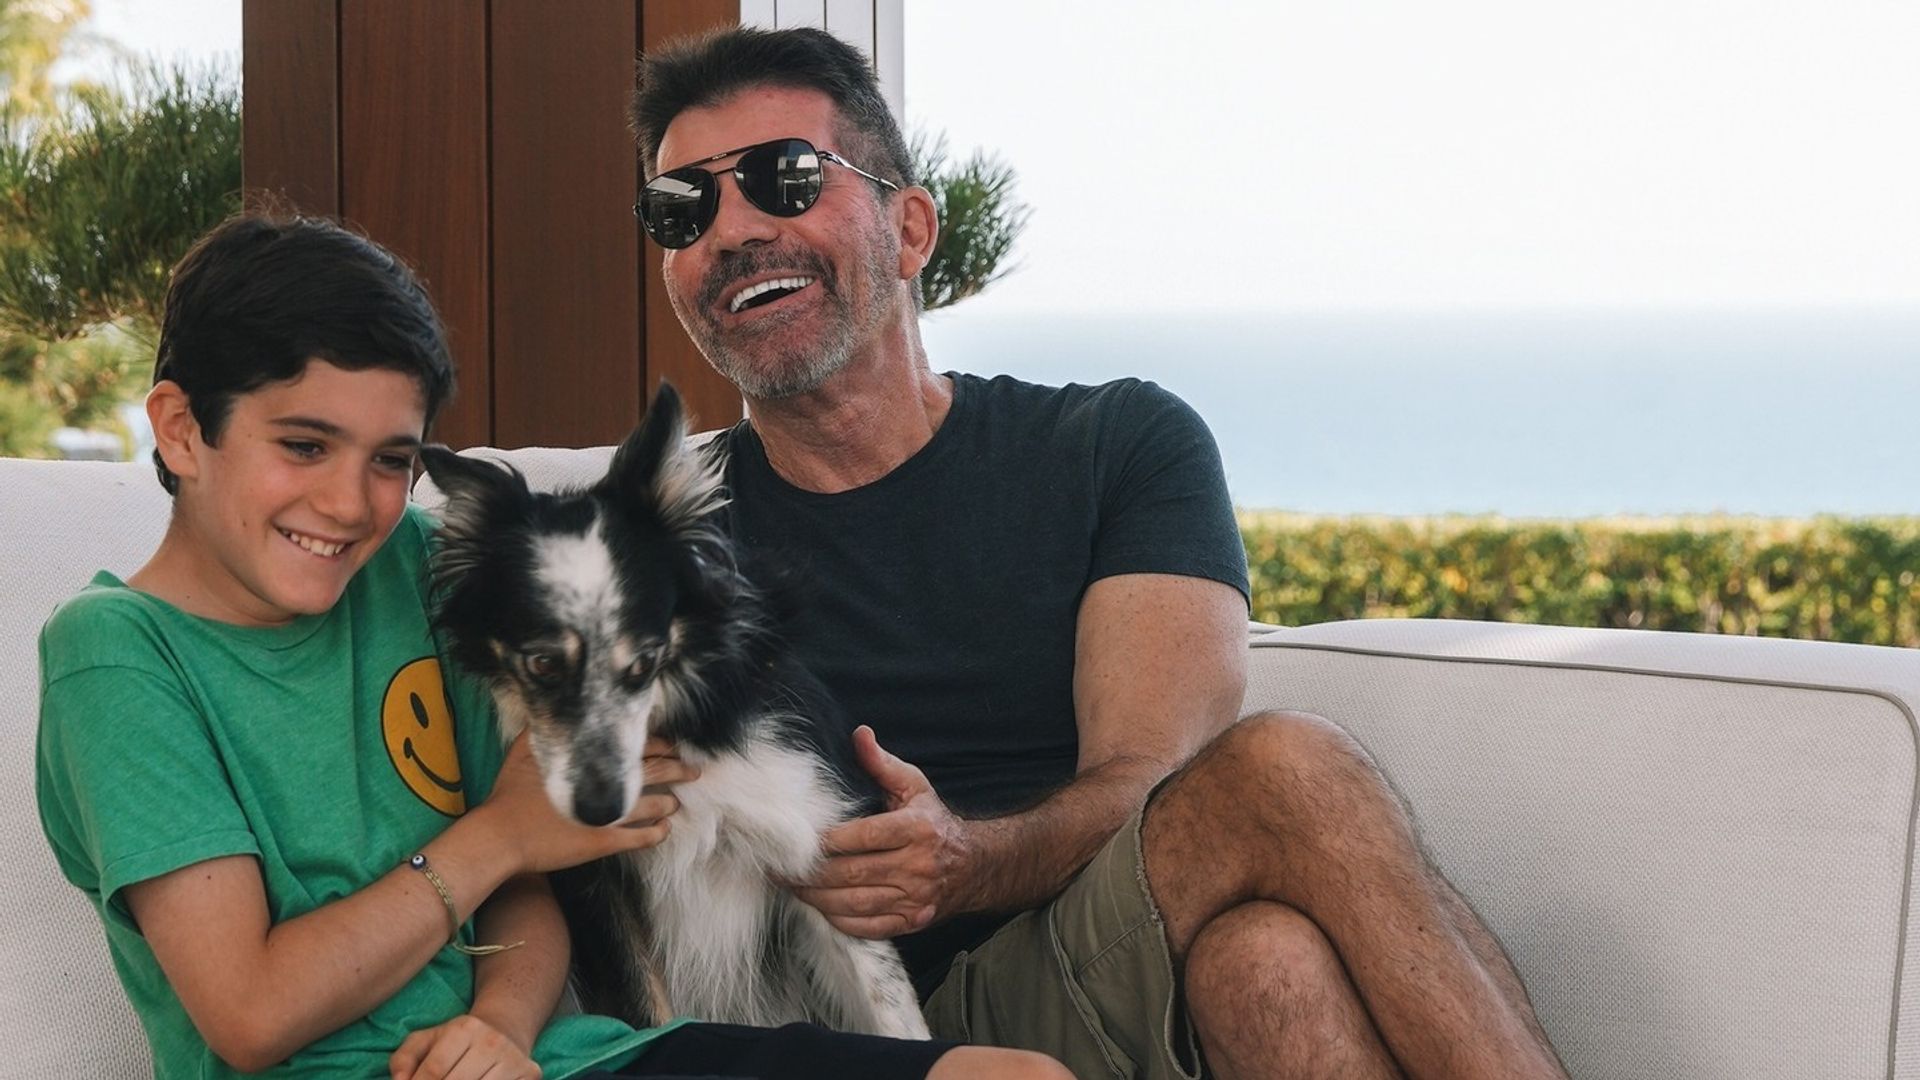 Simon with Eric and dog